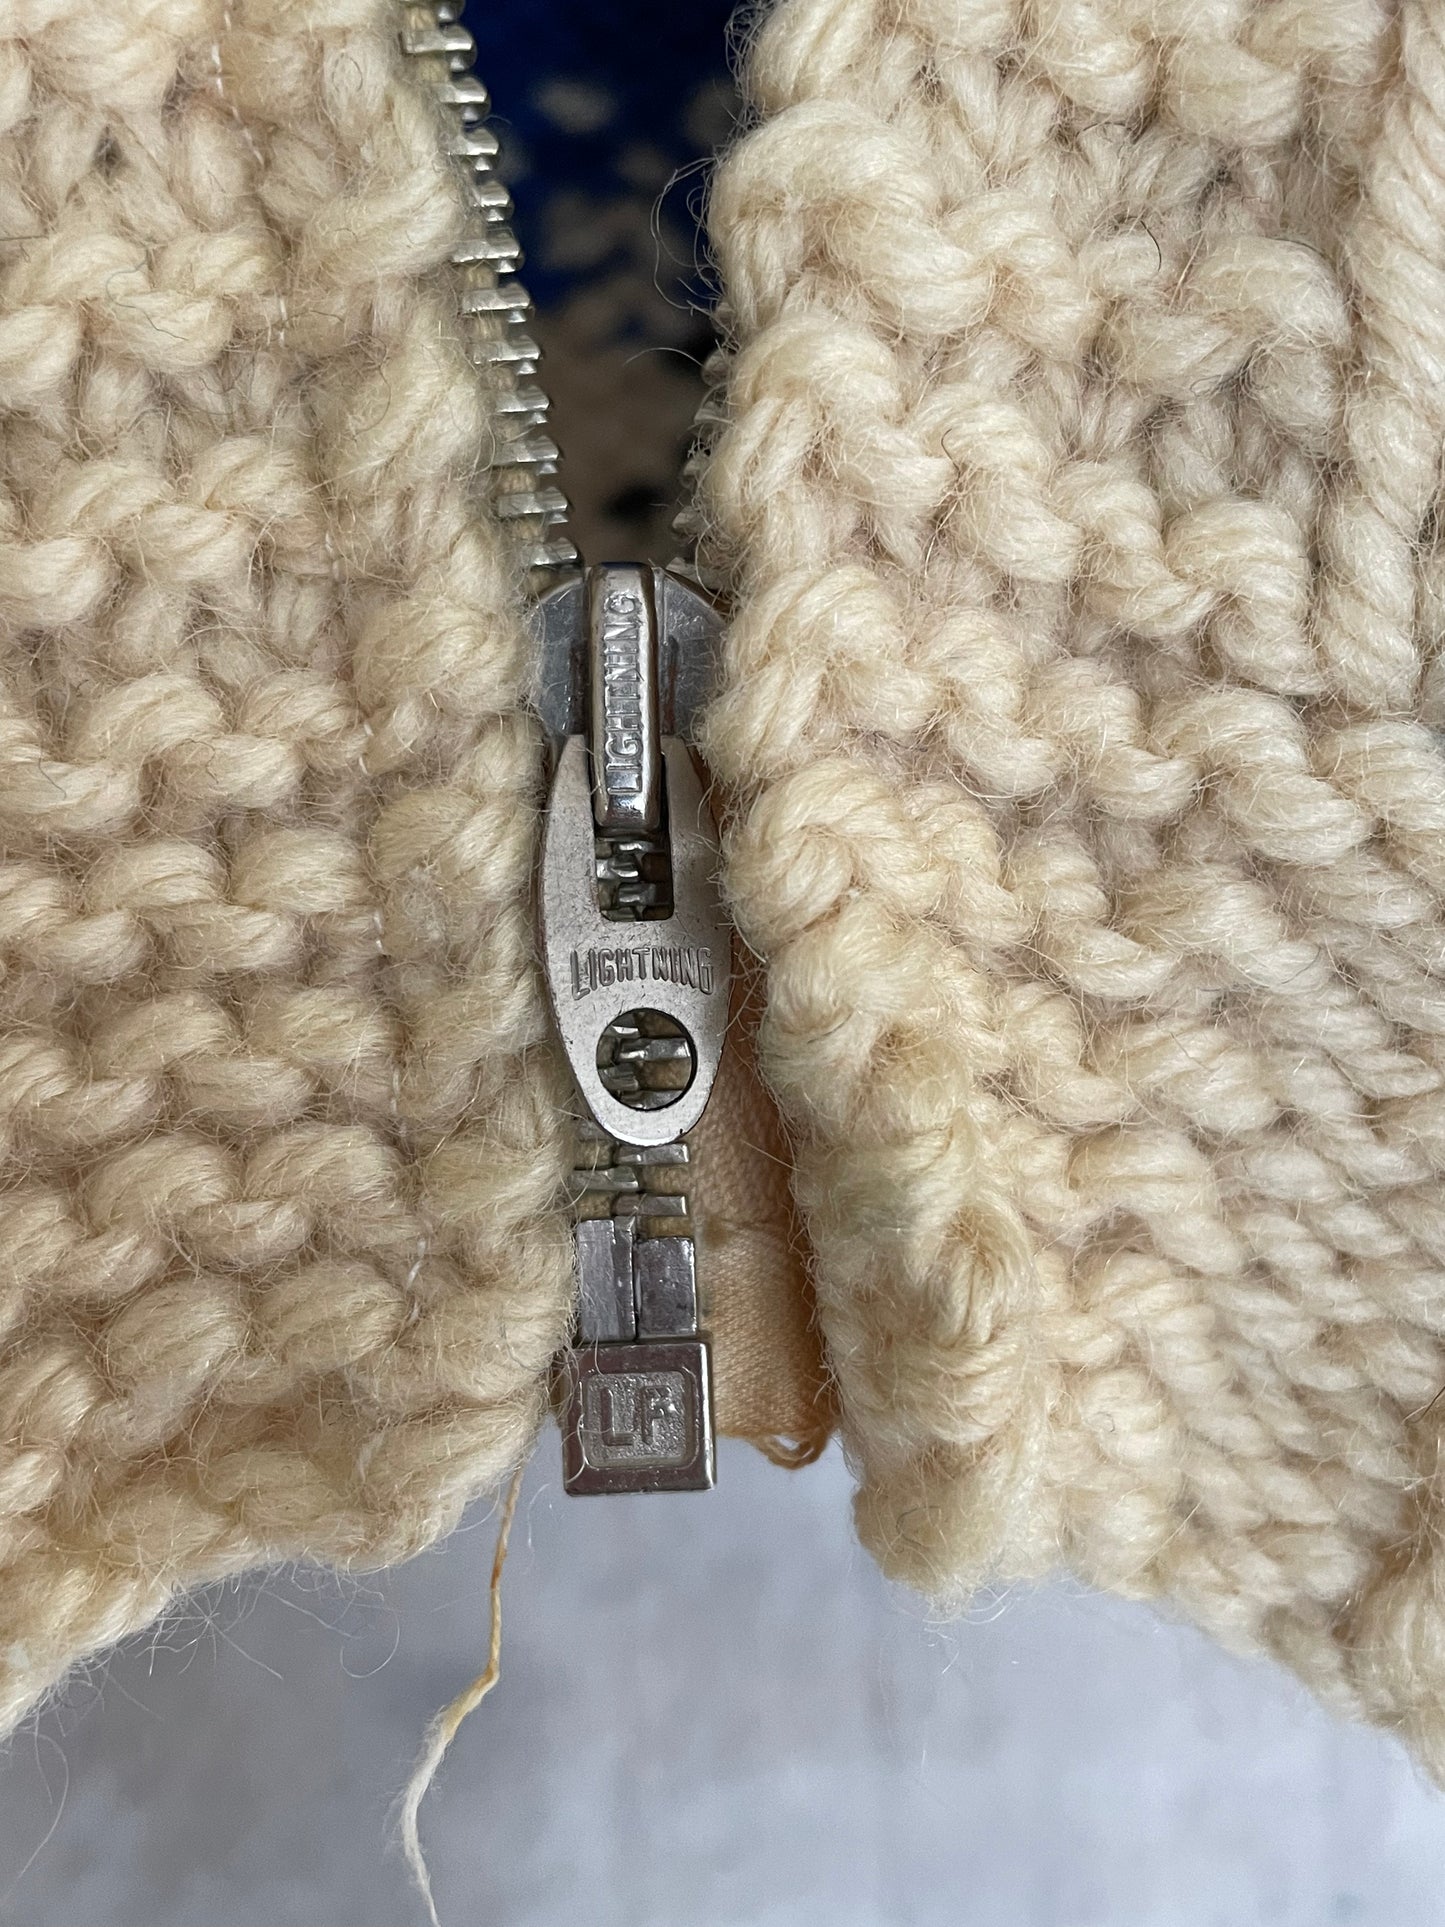 60s Handknit Cowichan Style Sweater